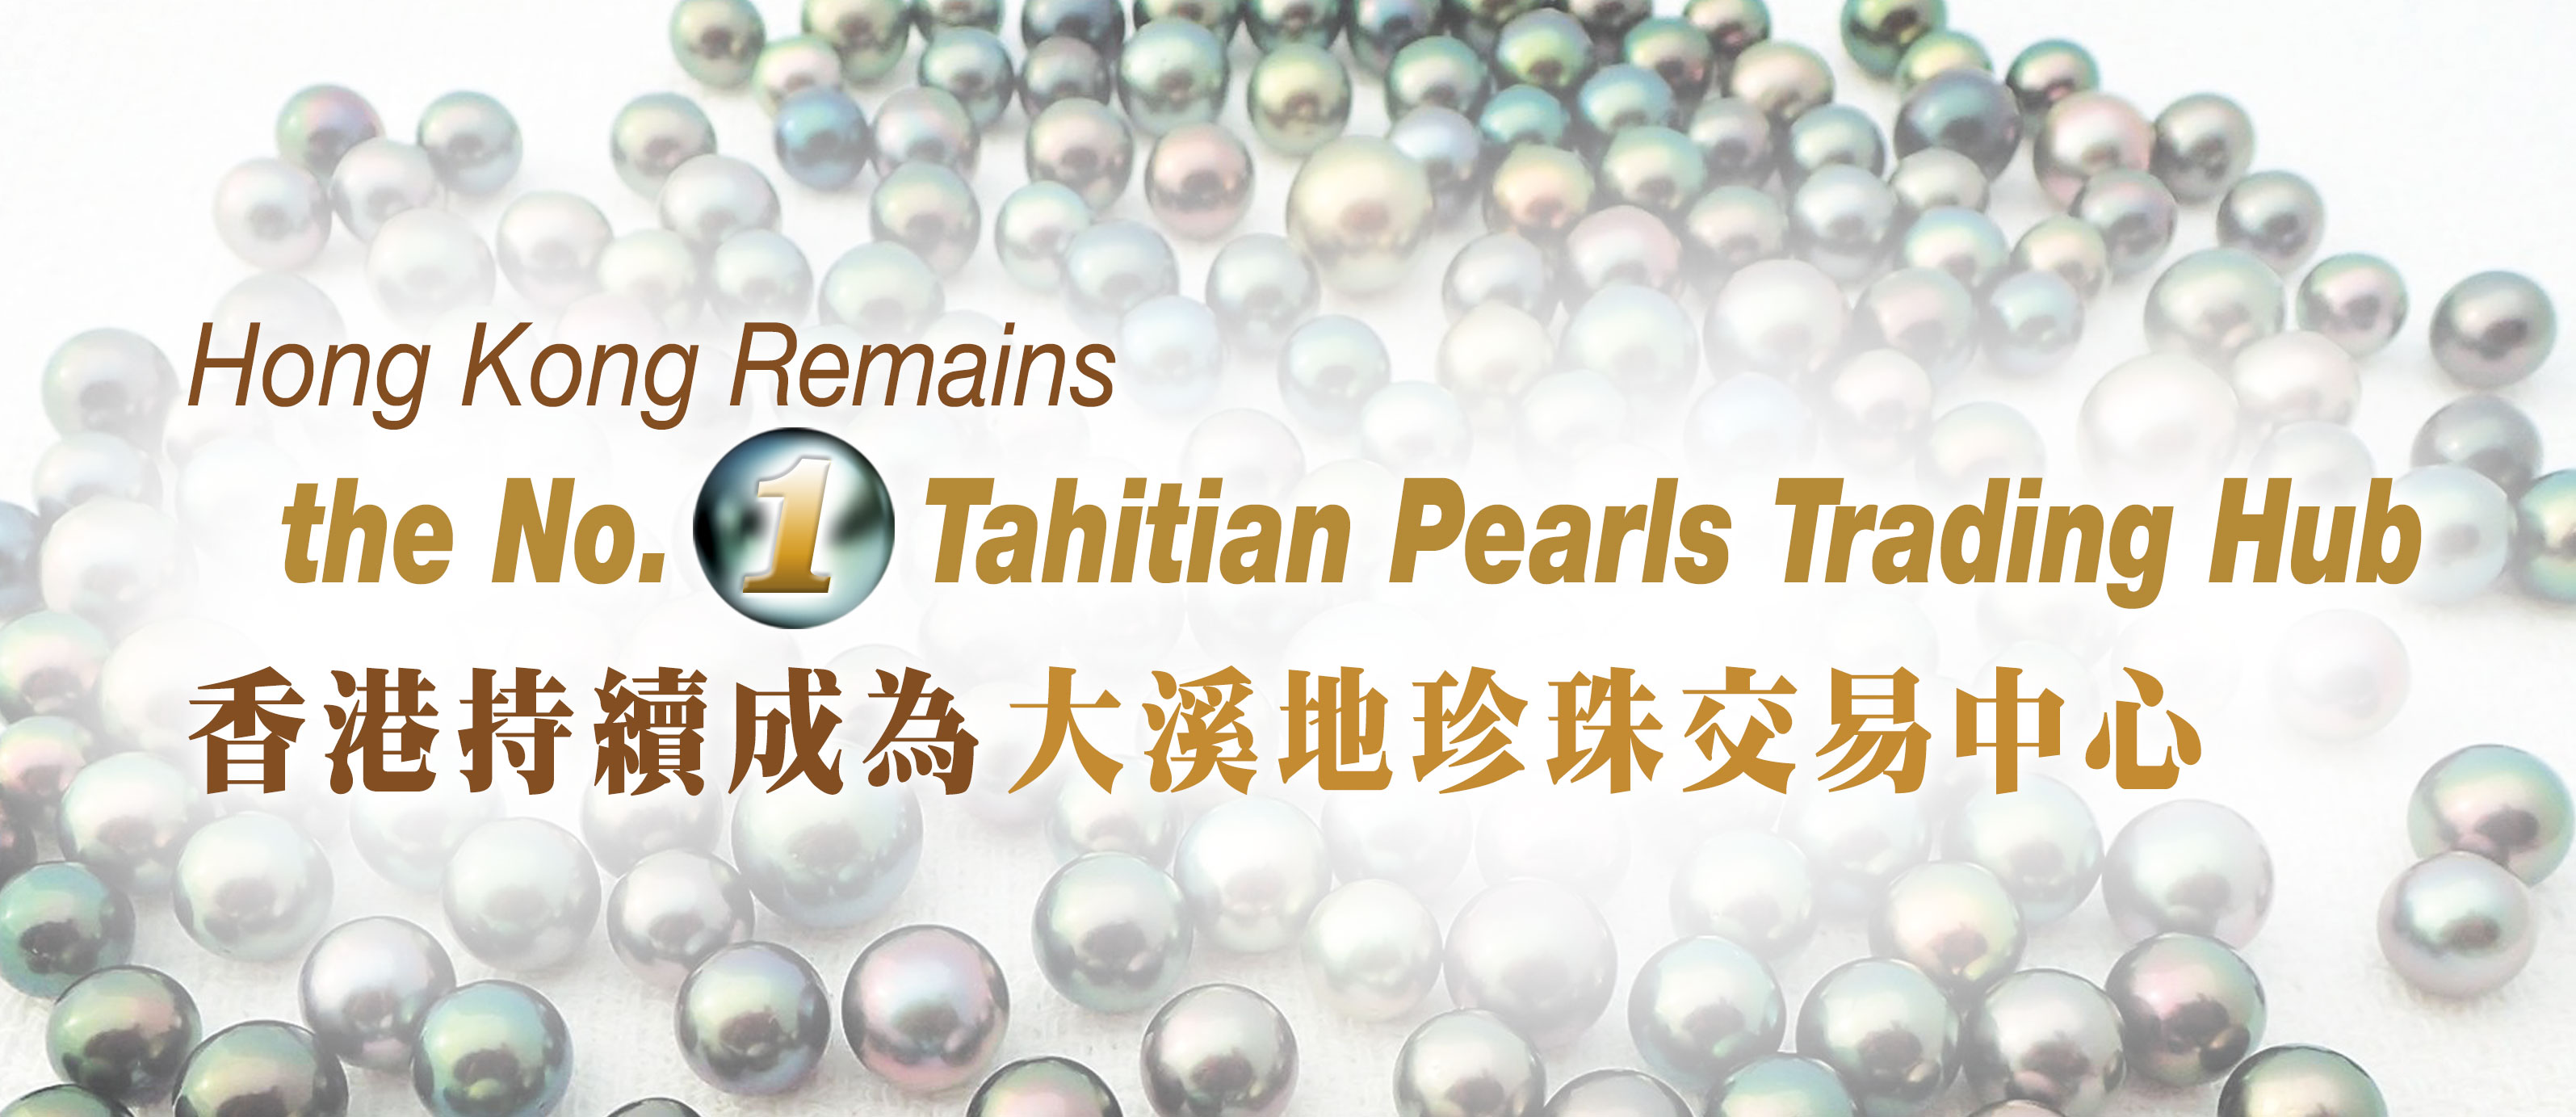 Hong Kong Remains the No.1 Tahitian Pearls Trading Hub